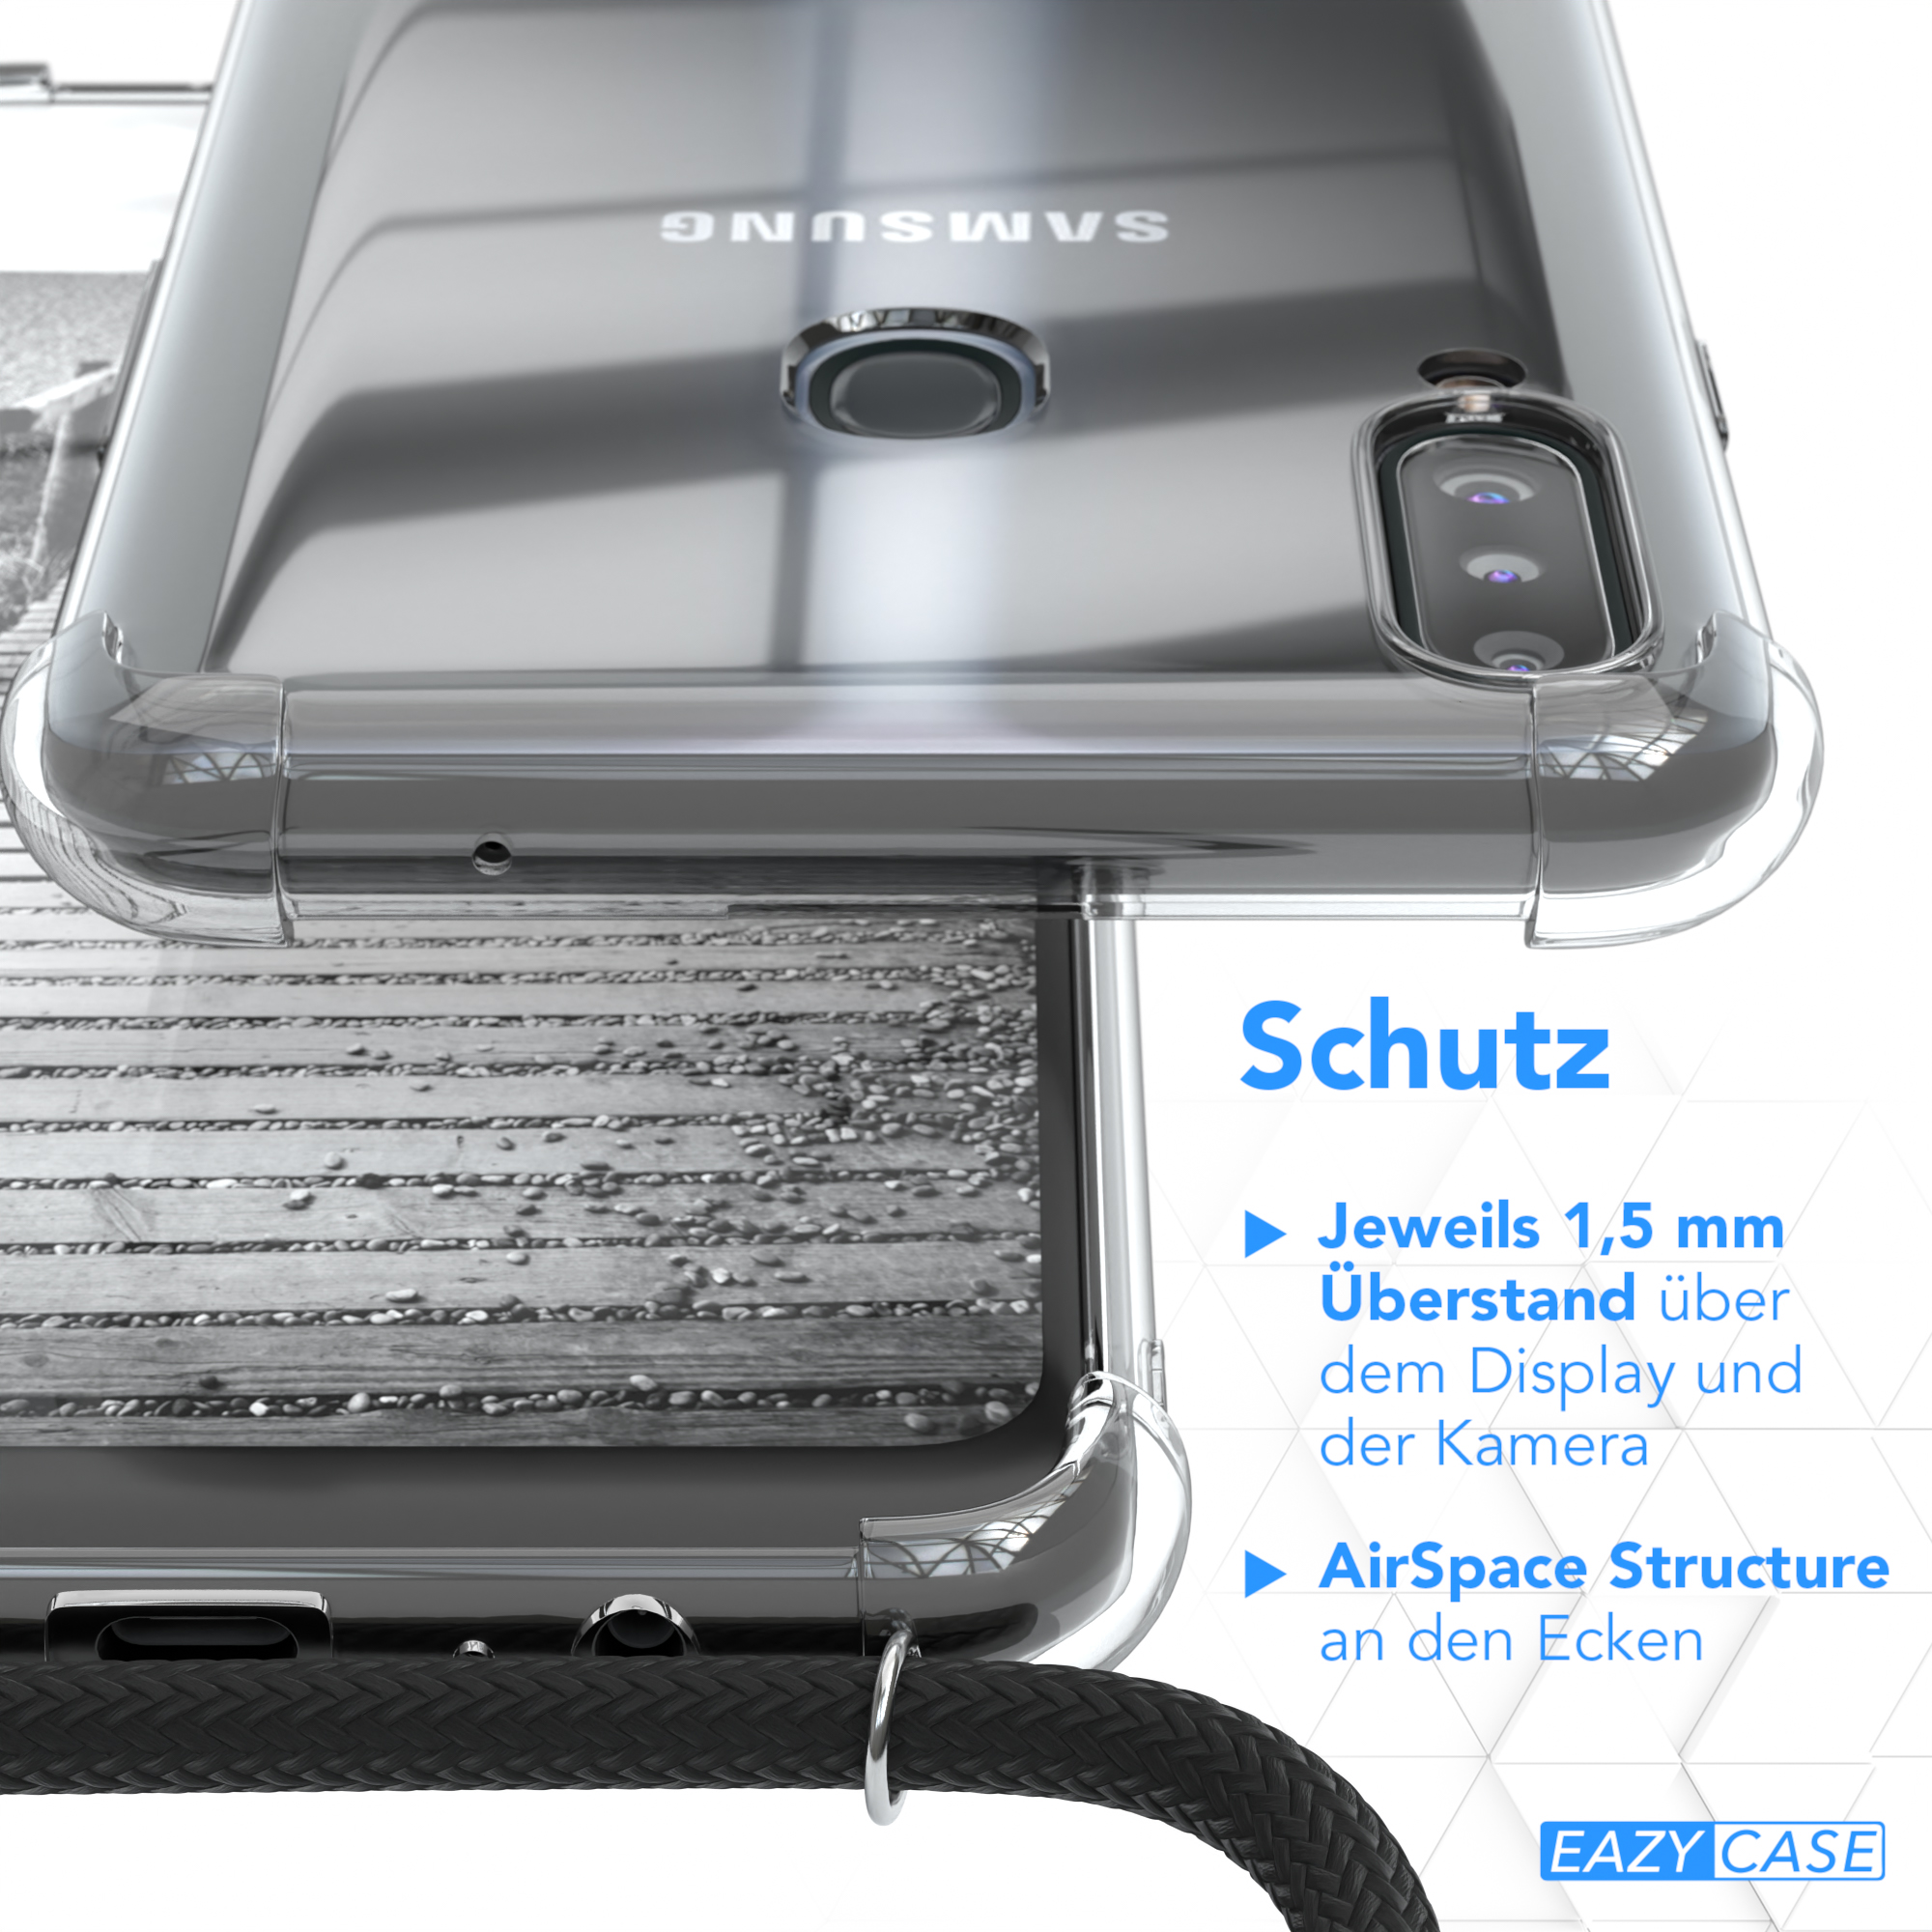 EAZY CASE Umhängetasche, Umhängeband, Galaxy Cover Clear mit Samsung, Schwarz A20s